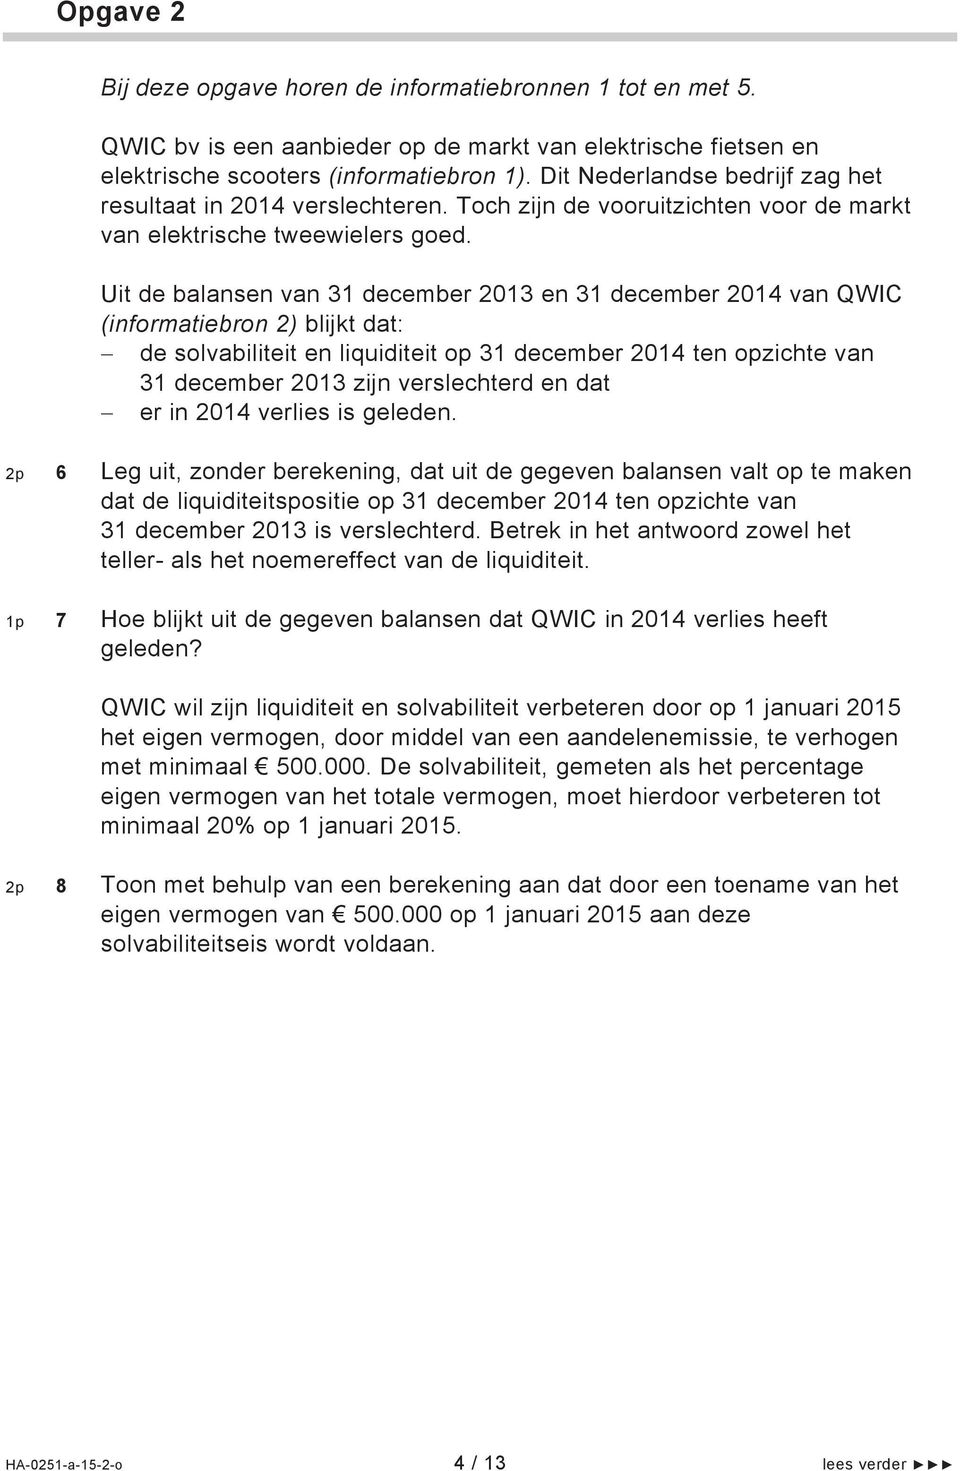 Uit de balansen van 31 december 2013 en 31 december 2014 van QWIC (informatiebron 2) blijkt dat: de solvabiliteit en liquiditeit op 31 december 2014 ten opzichte van 31 december 2013 zijn